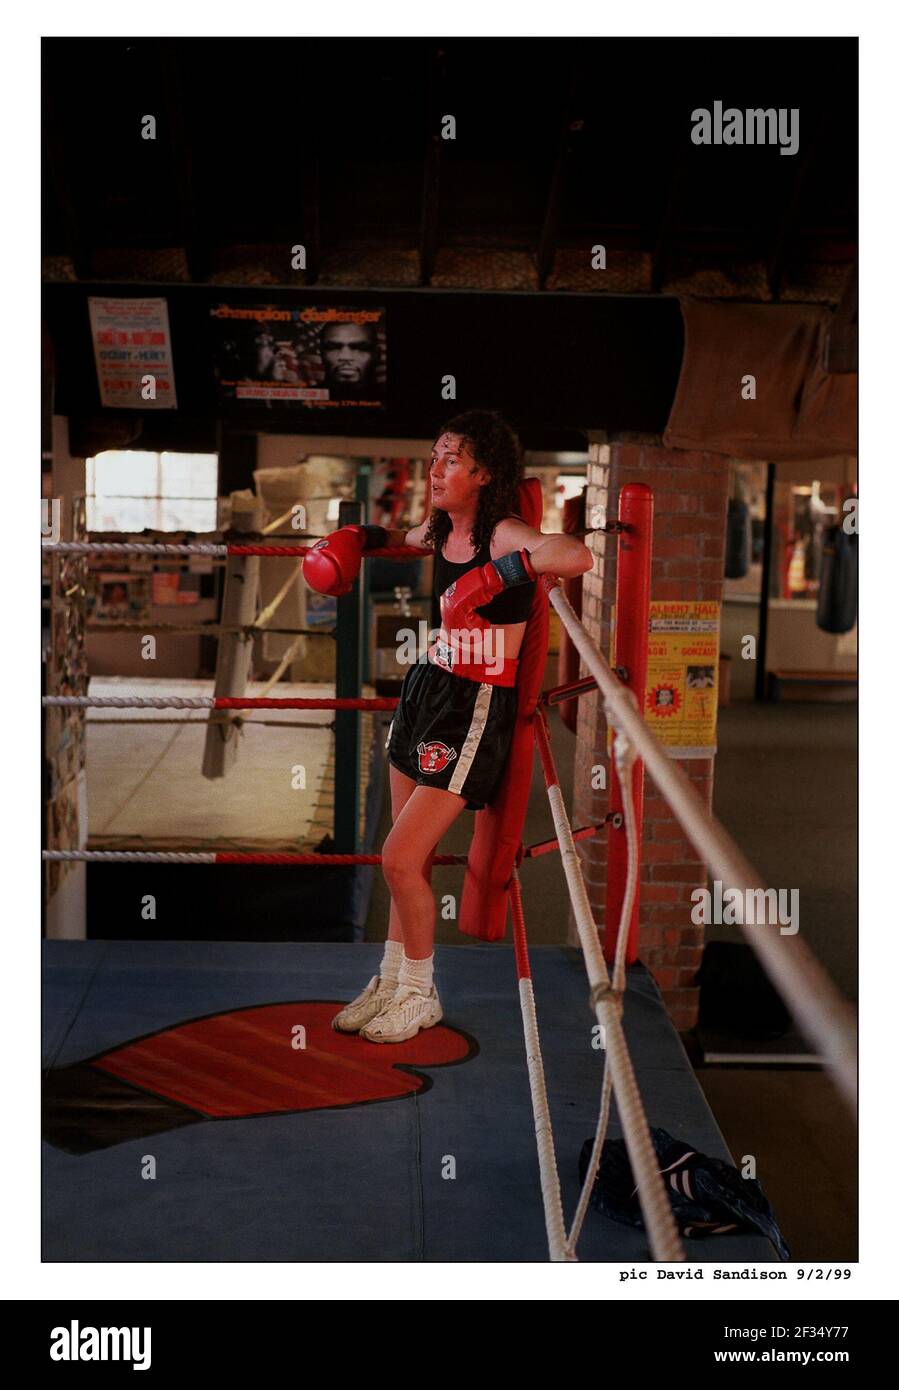 Le boxeur Jane Couch s'entraîne à Bristol en préparation à son combat le samedi. Banque D'Images